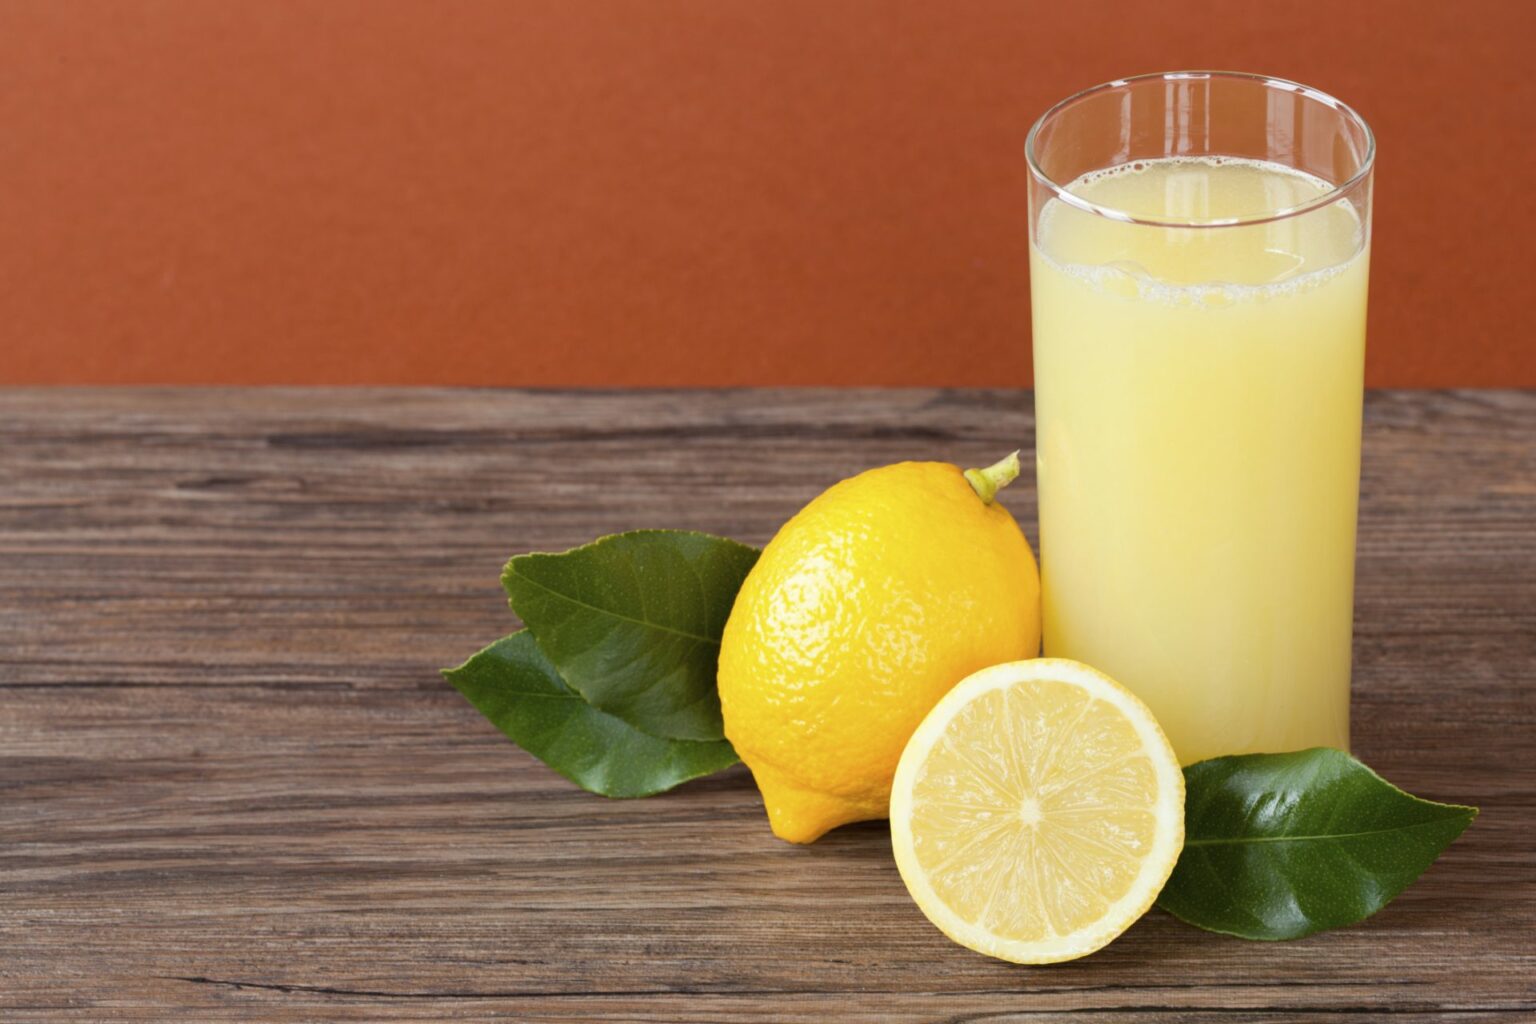 معجزة حقيقية.. 10 أسباب ستجعلكم تشربون الماء مع الليمون كل يوم في الصباح..تعرف عليها ولن تندم